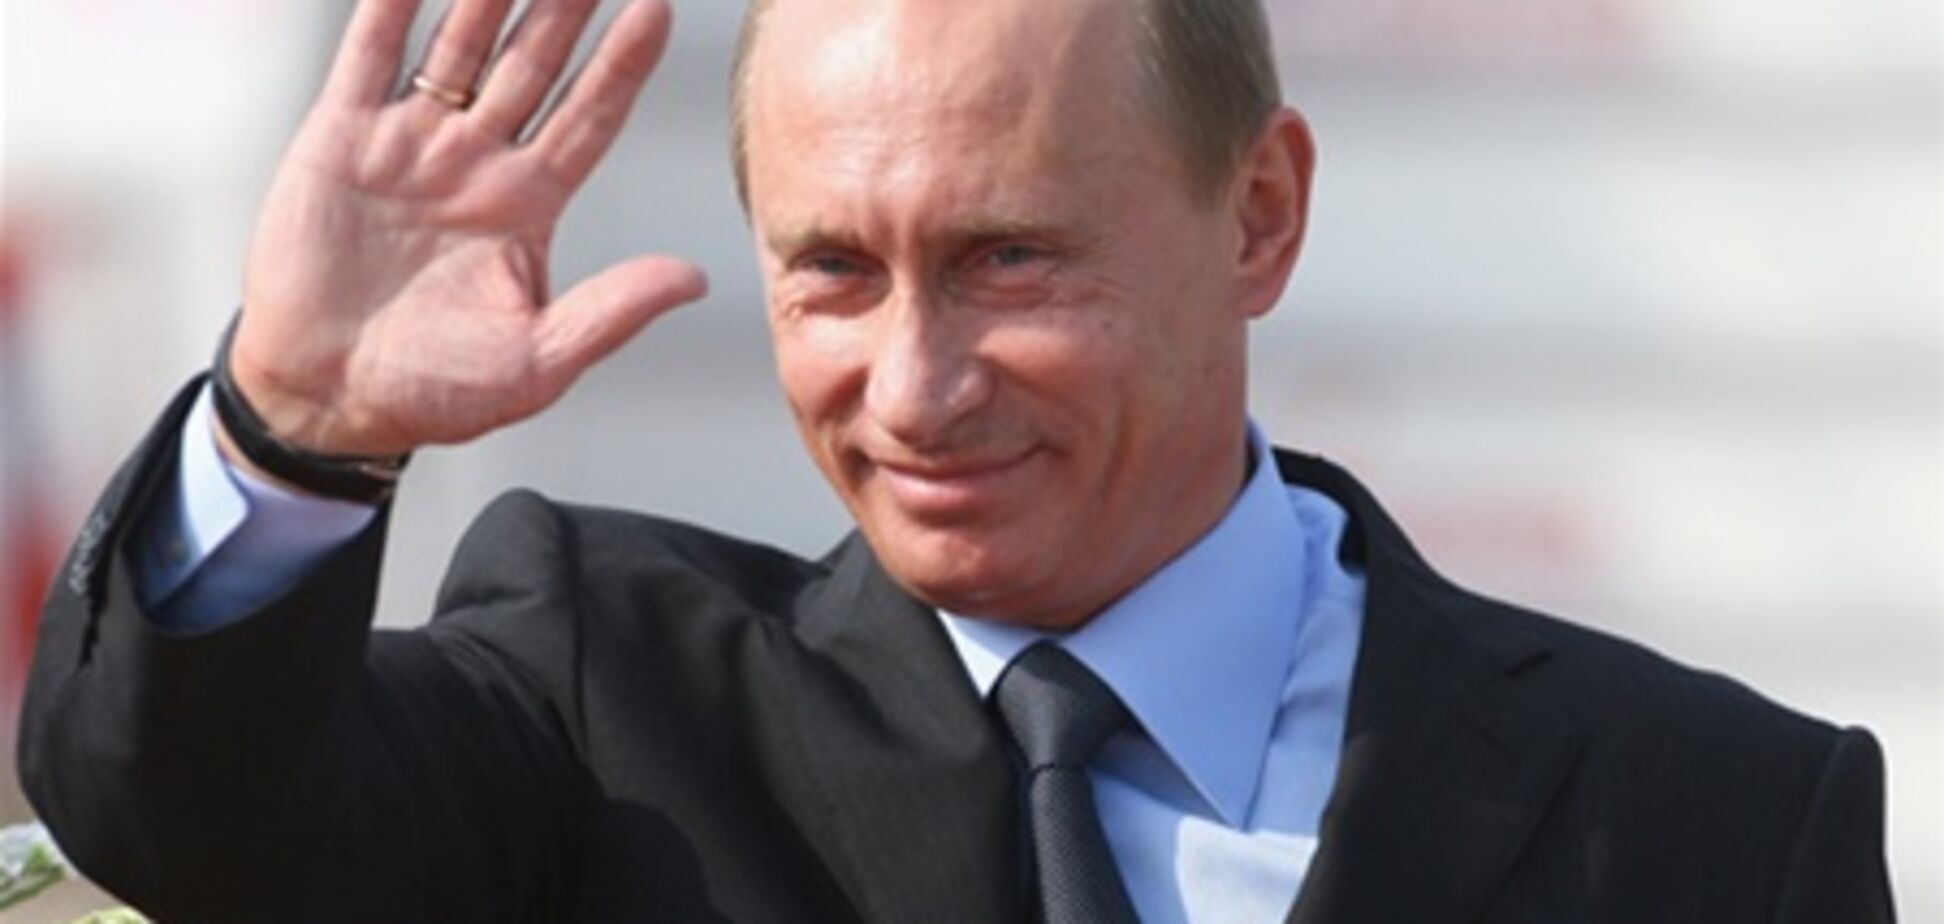 Більше 50% росіян не бажають переобрання Путіна в 2018 г